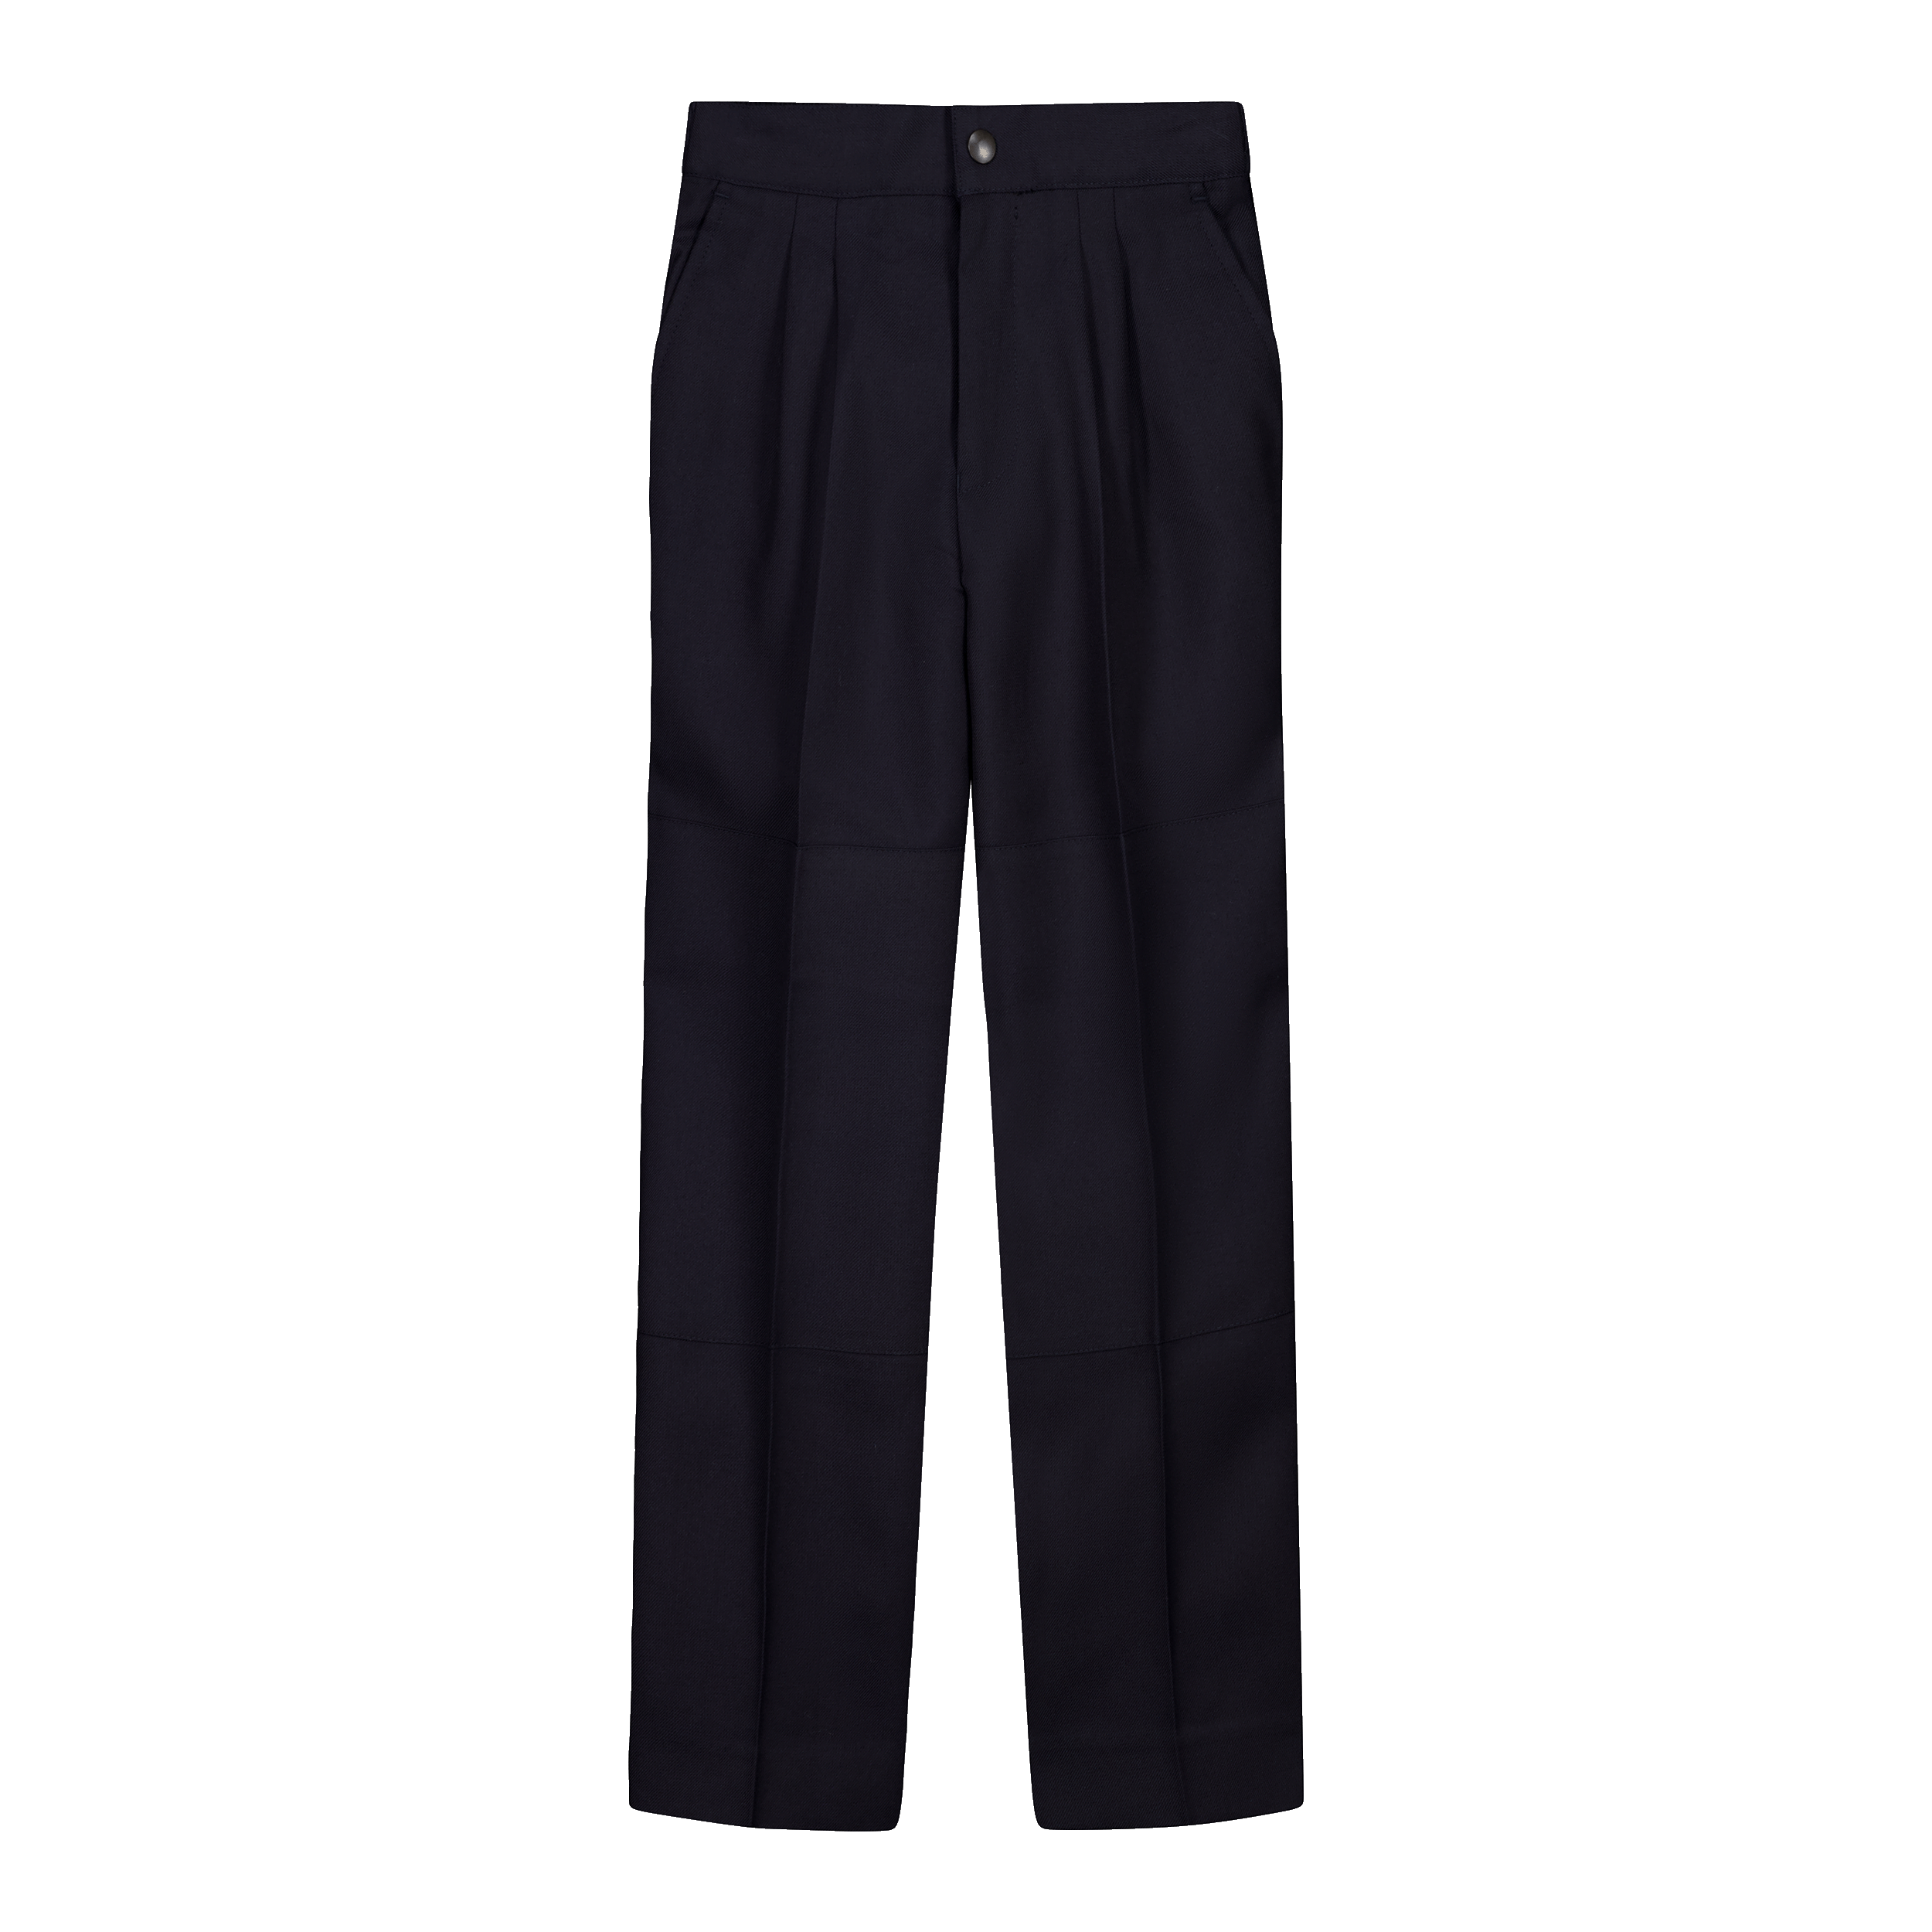 Navy Pant (Tailored ) – Peninsula Grammar